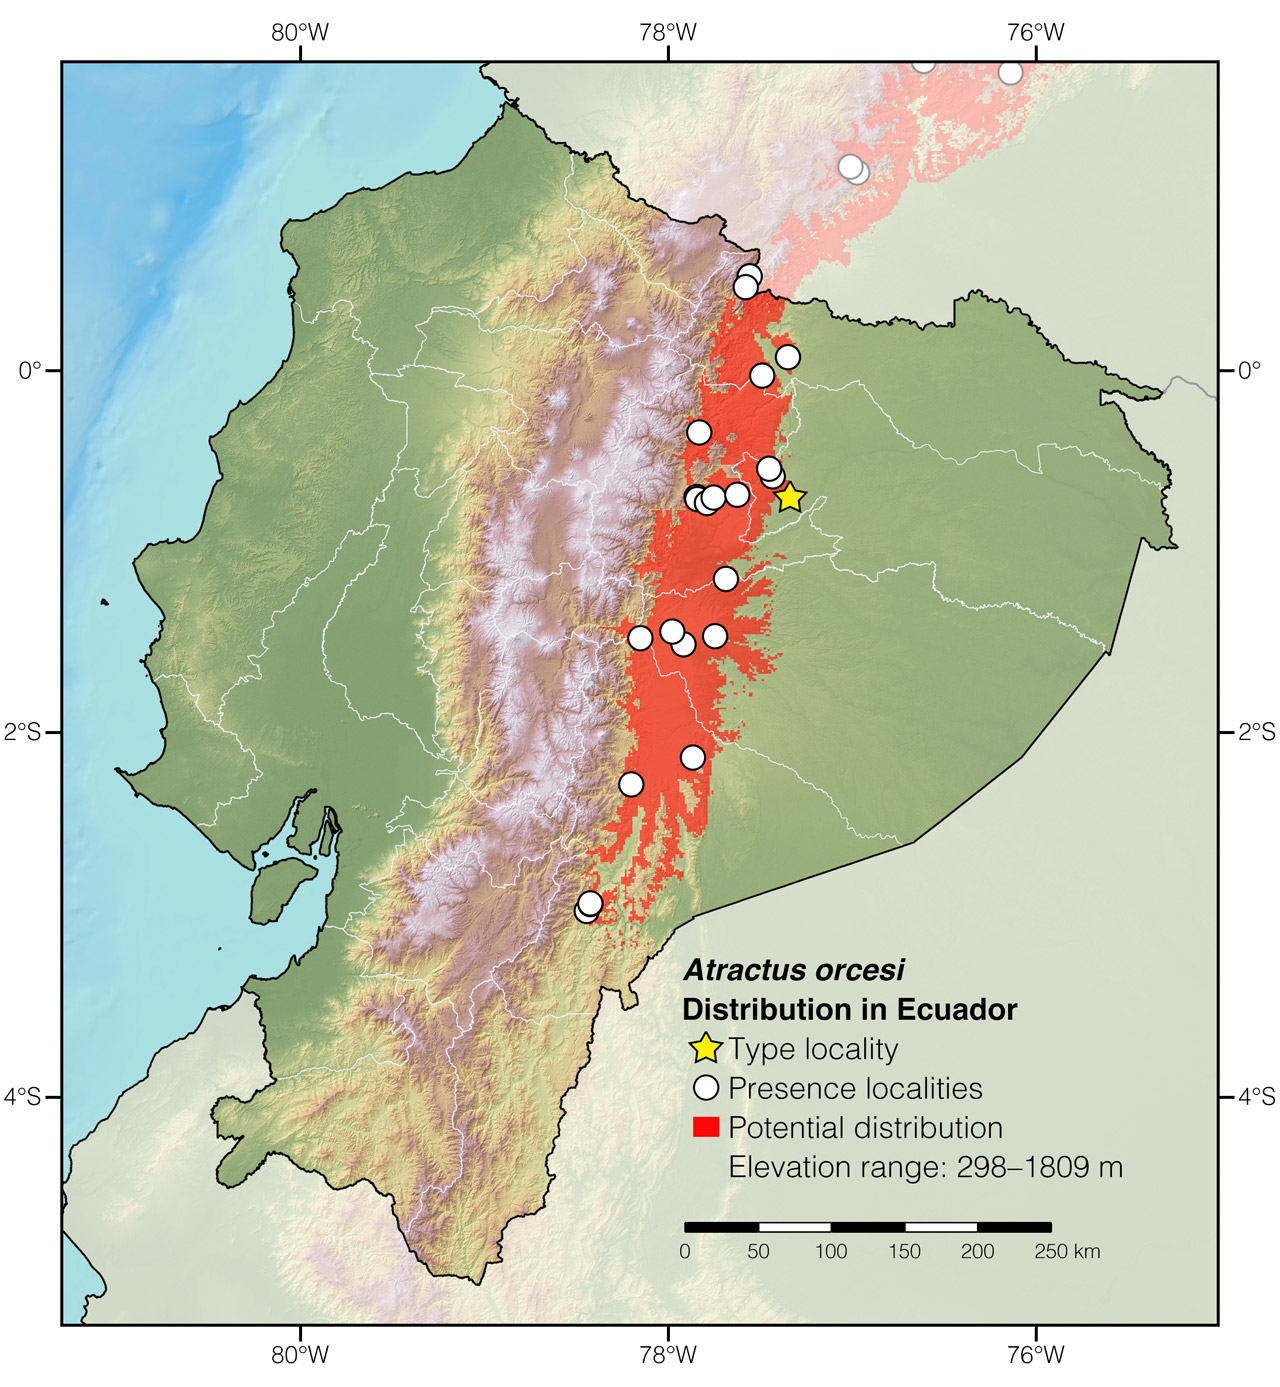 Distribution of Atractus orcesi in Ecuador